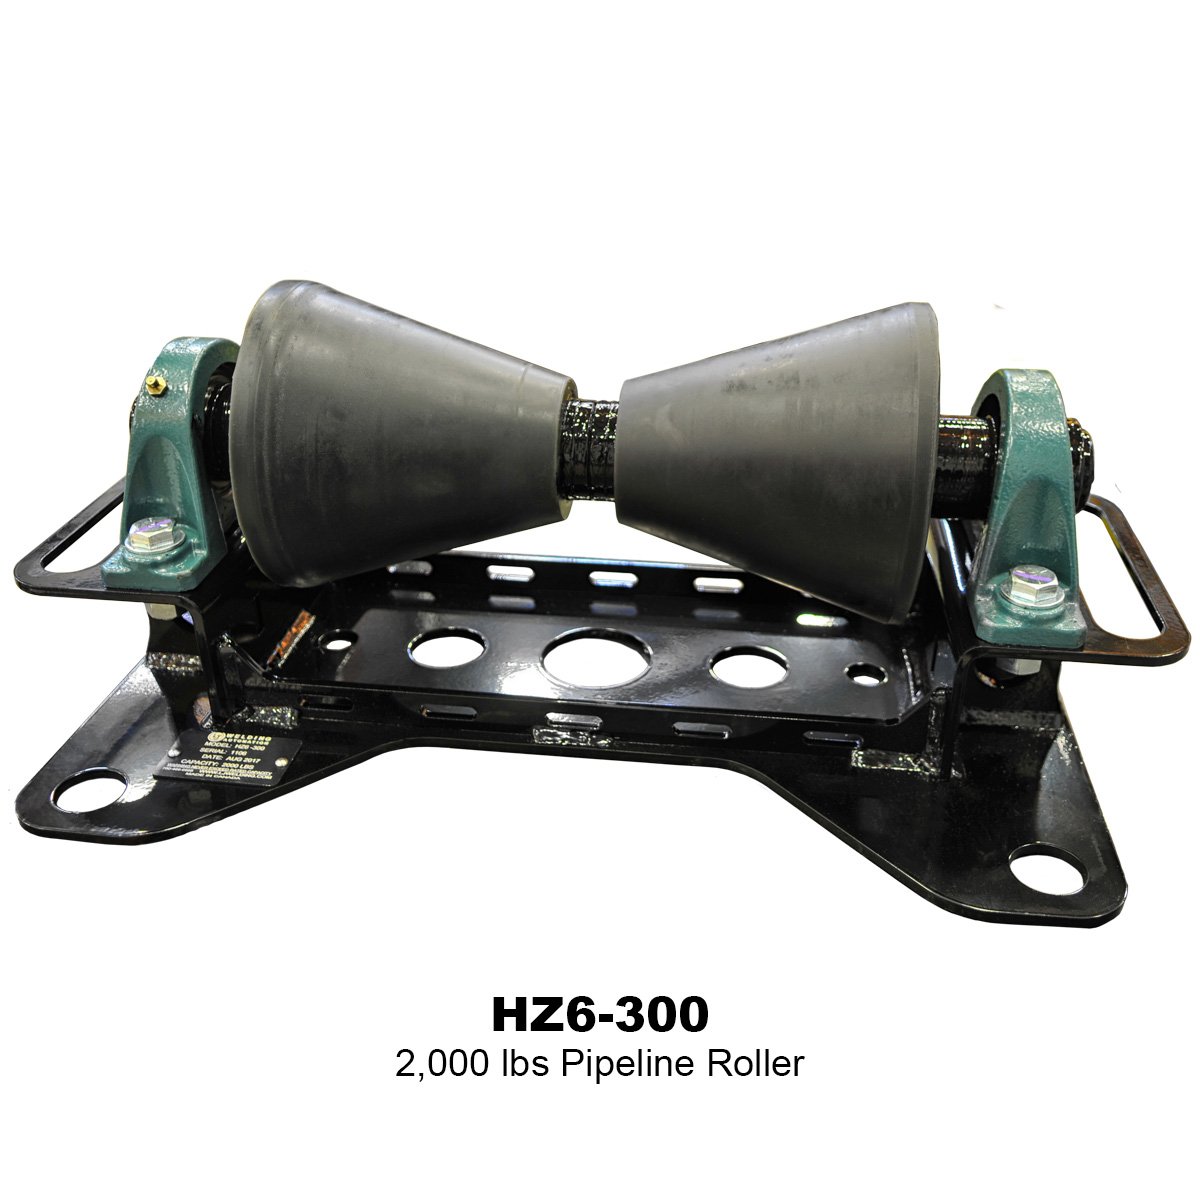 01-2000lbs-Pipeline-Roller